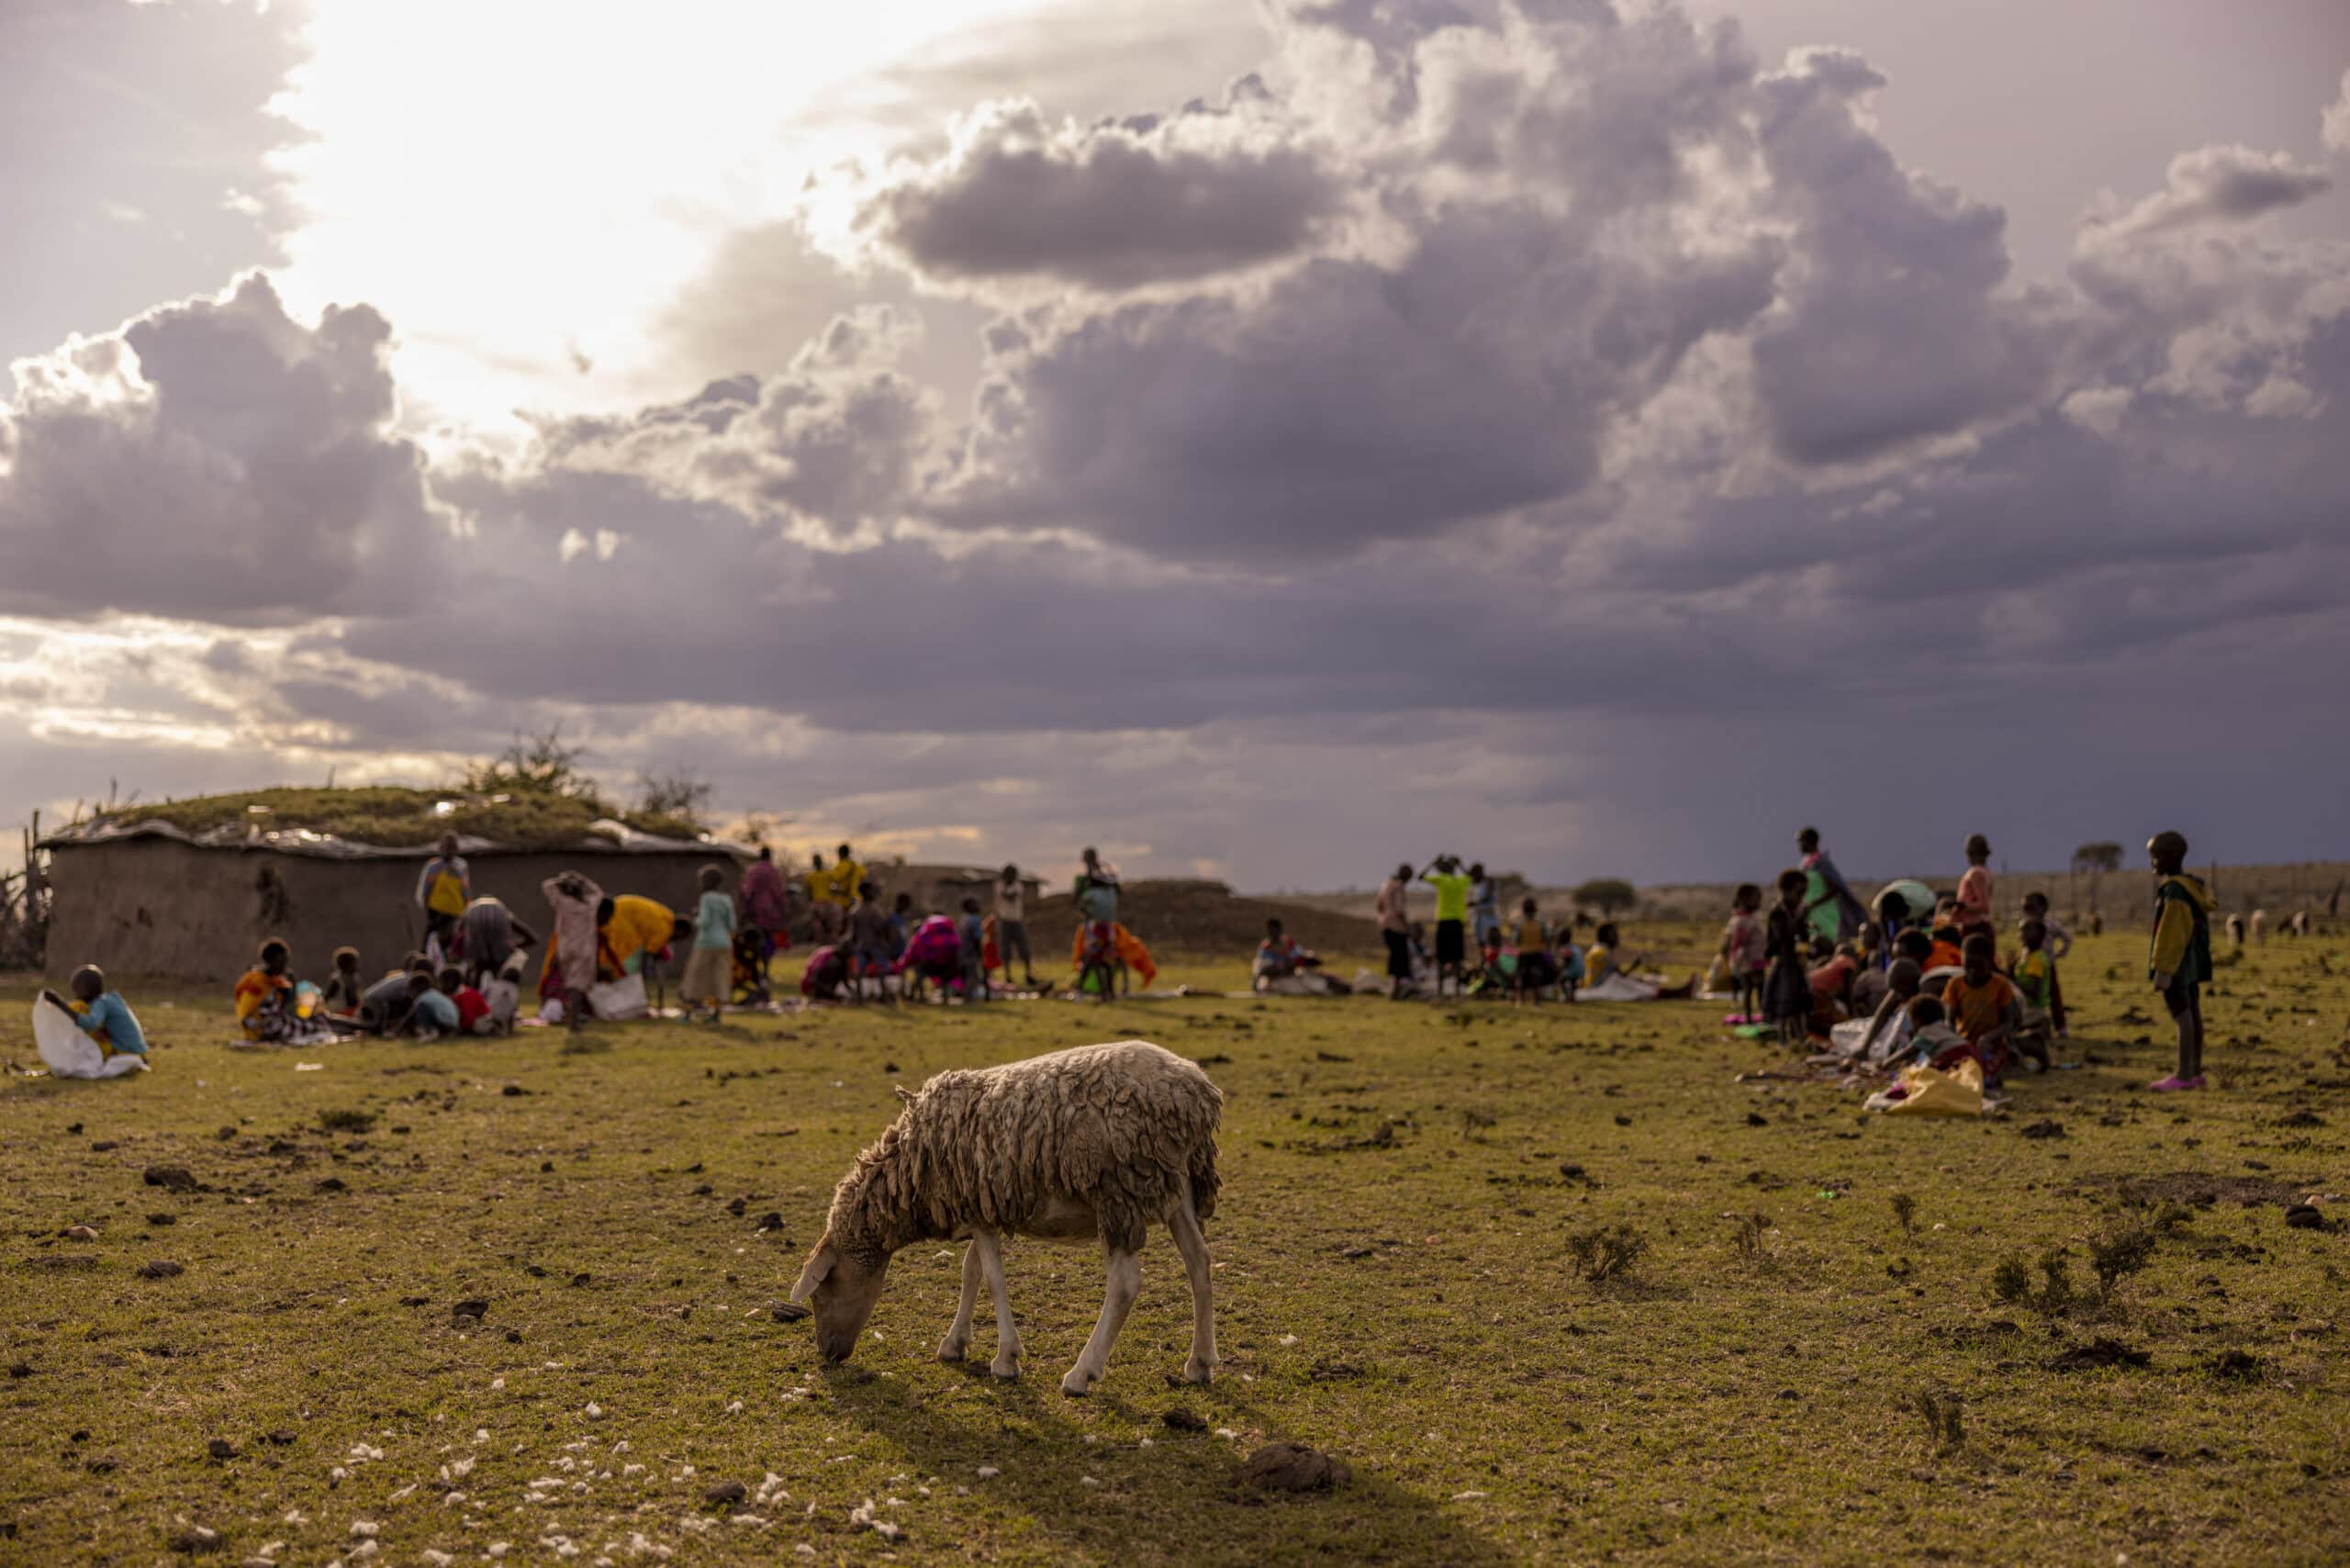 Im Vordergrund grast ein einsames Schaf. Eine Gruppe von Menschen, darunter bunt gekleidete Kinder, hat sich bei Sonnenuntergang unter einem bewölkten Himmel in der Nähe einer einfachen Behausung versammelt. © Fotografie Tomas Rodriguez